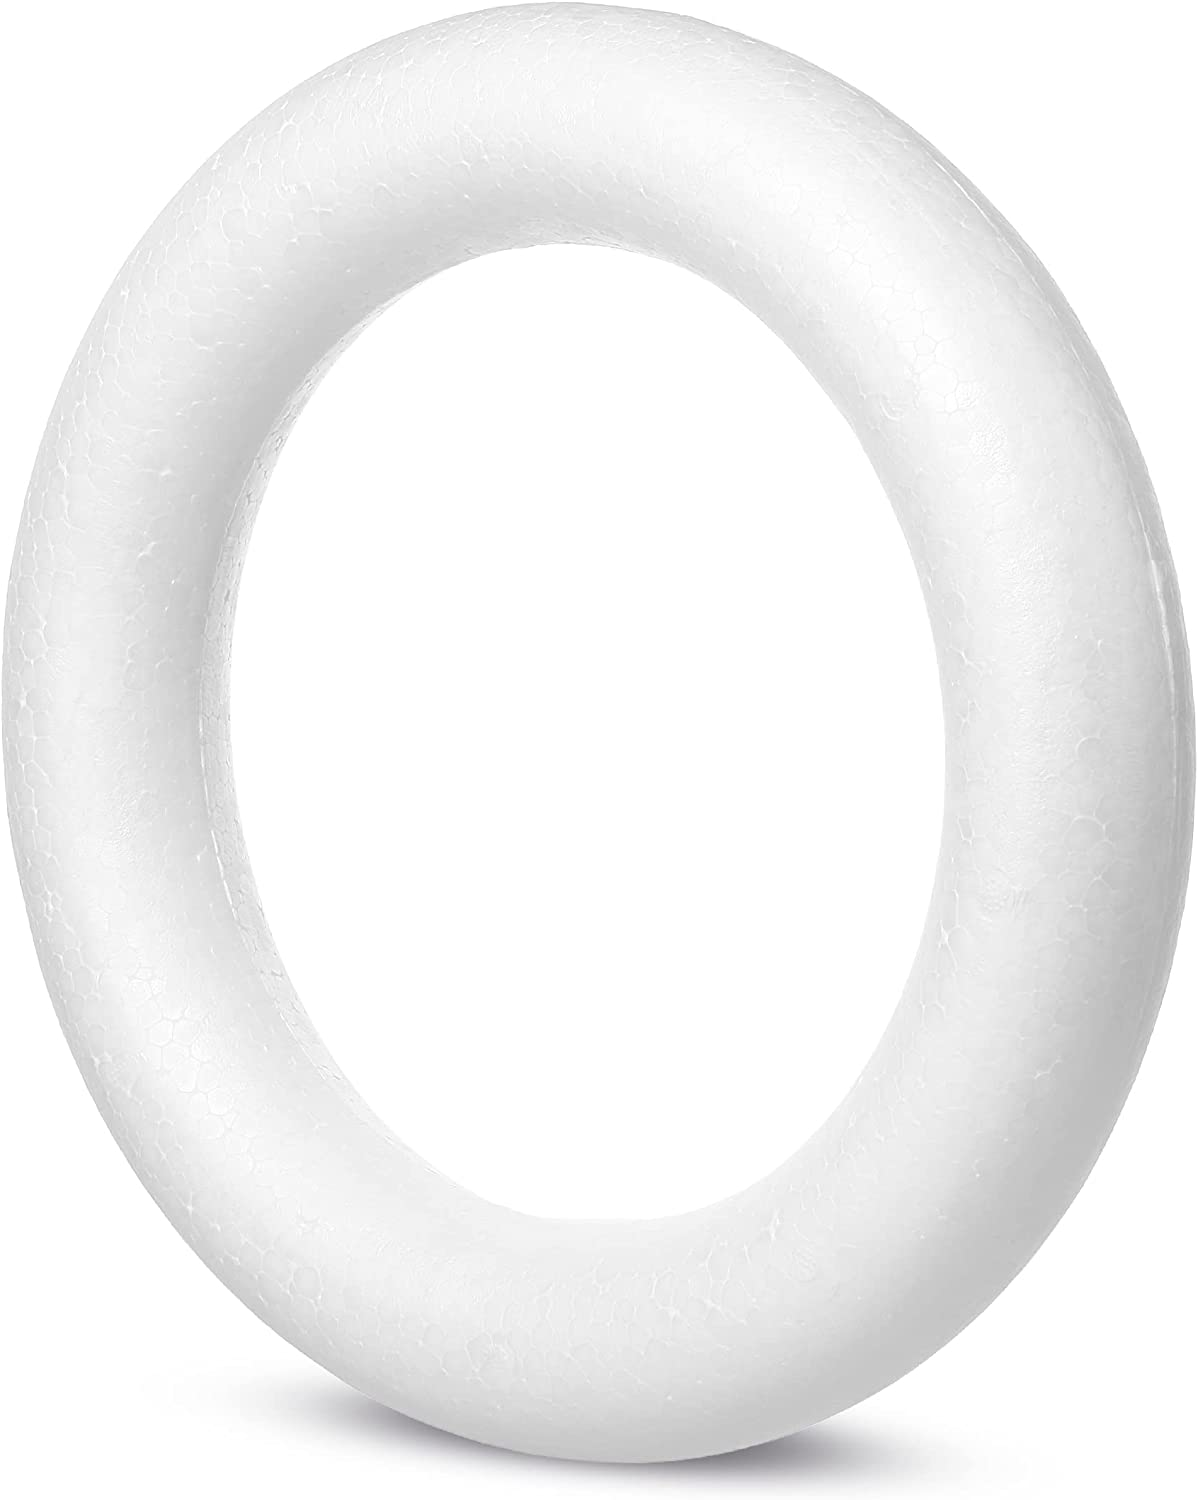 Foam Wreath Form, 12 Inch, Large Foam Ring, Foam Circle, Polystyrene Foam,  Round Foam for Crafts, Wreath Form for Crafts